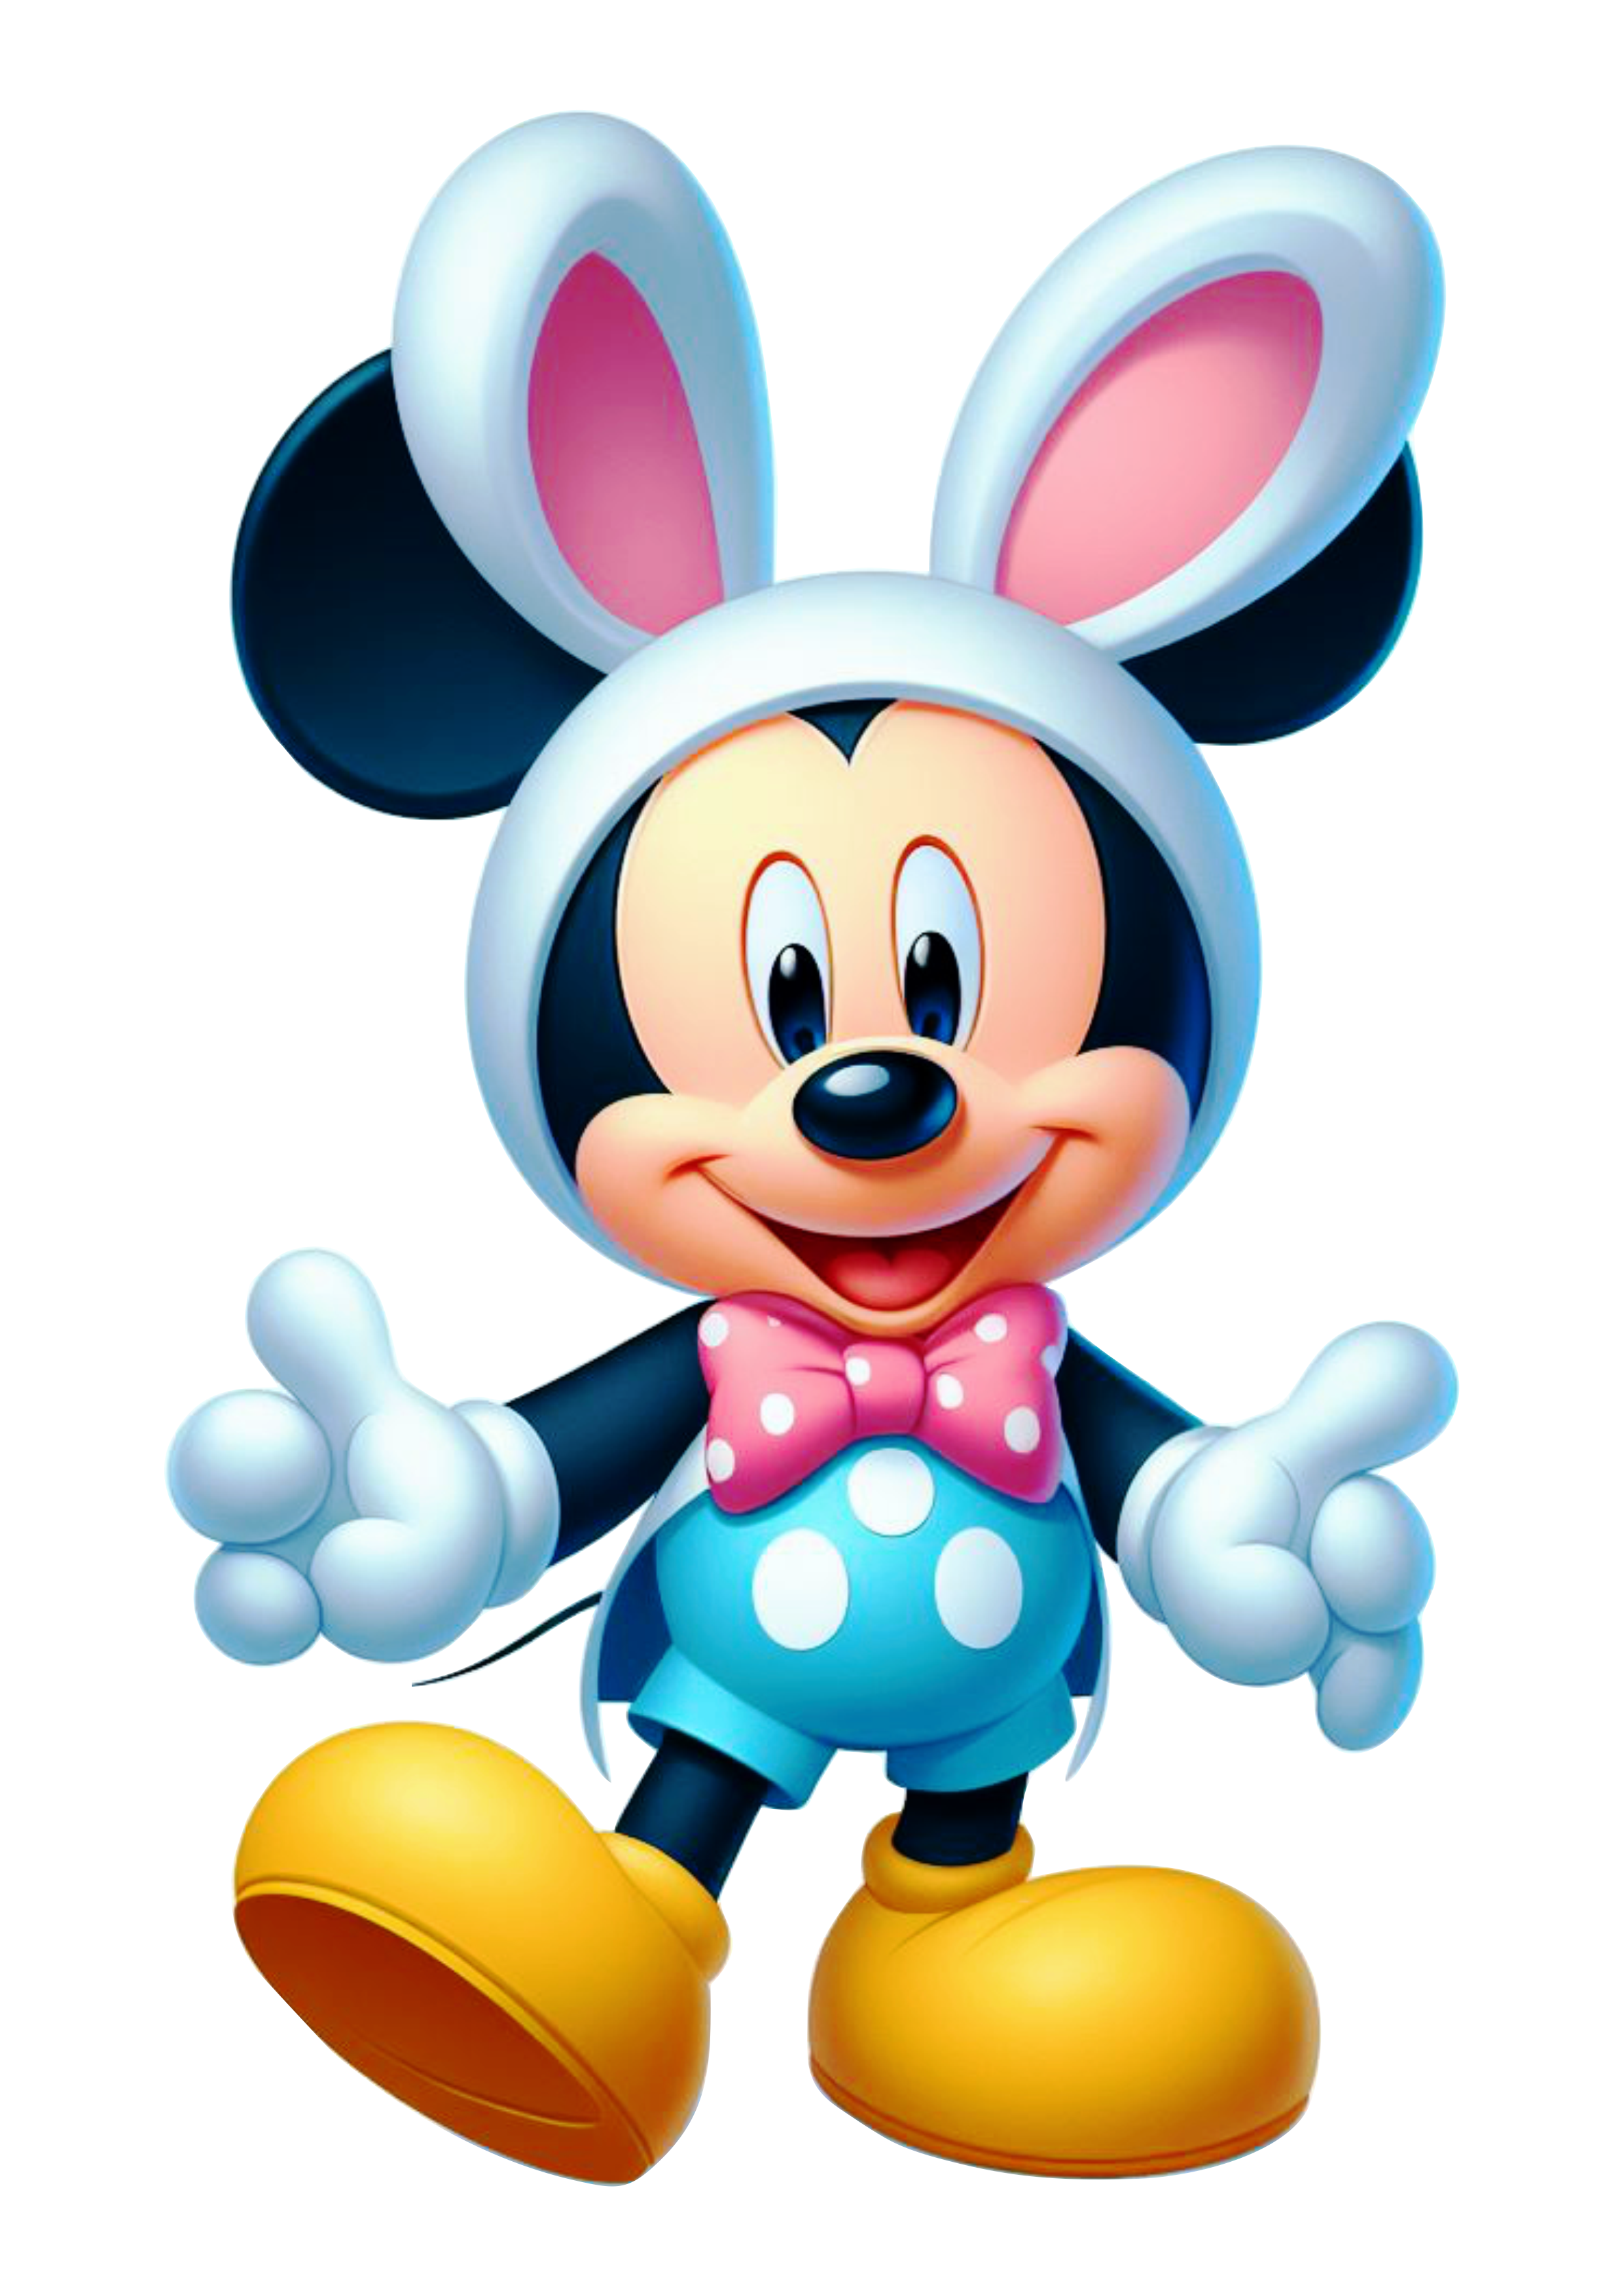 Imagens de páscoa decoração Mickey Mouse com orelhas de coelhinho desenho infantil clipart png vetor Disney ilustração